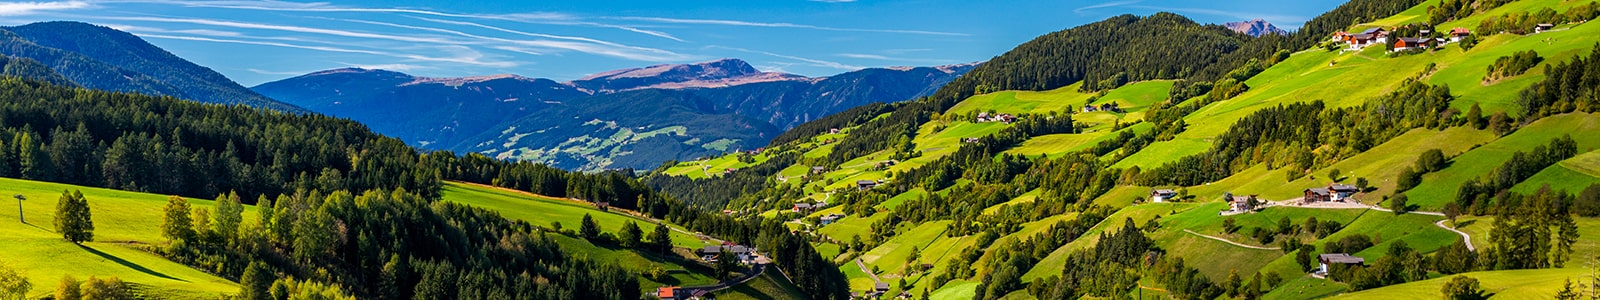 I Prodotti Tipici della Regione Trentino Alto Adige